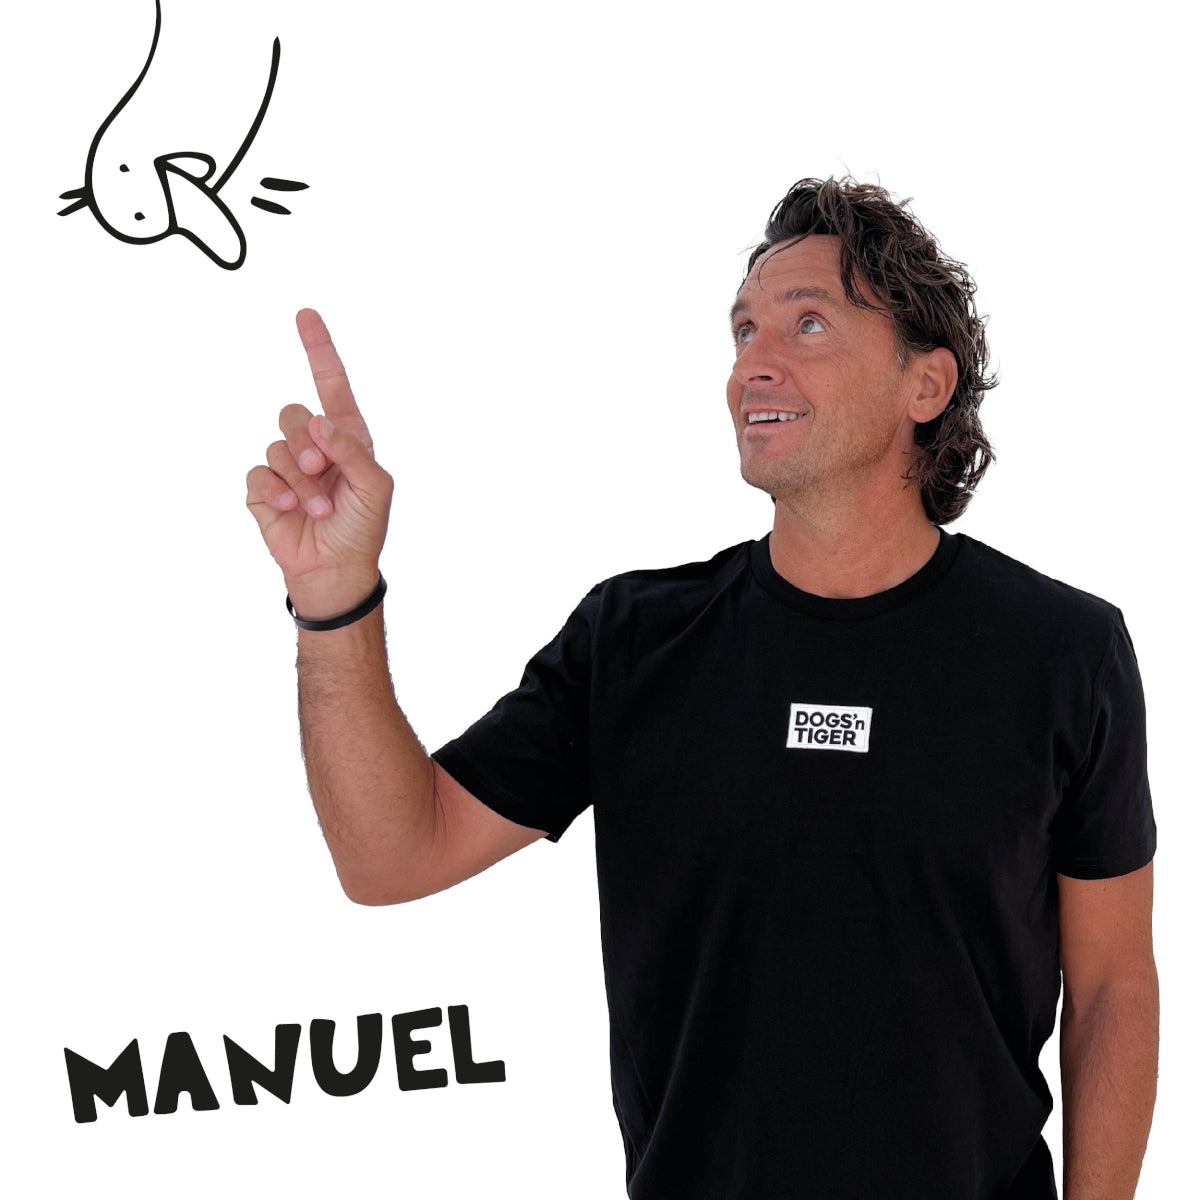 Foto von Manuel in schwarzem Shirt mit Dogs'n Tiger Logo